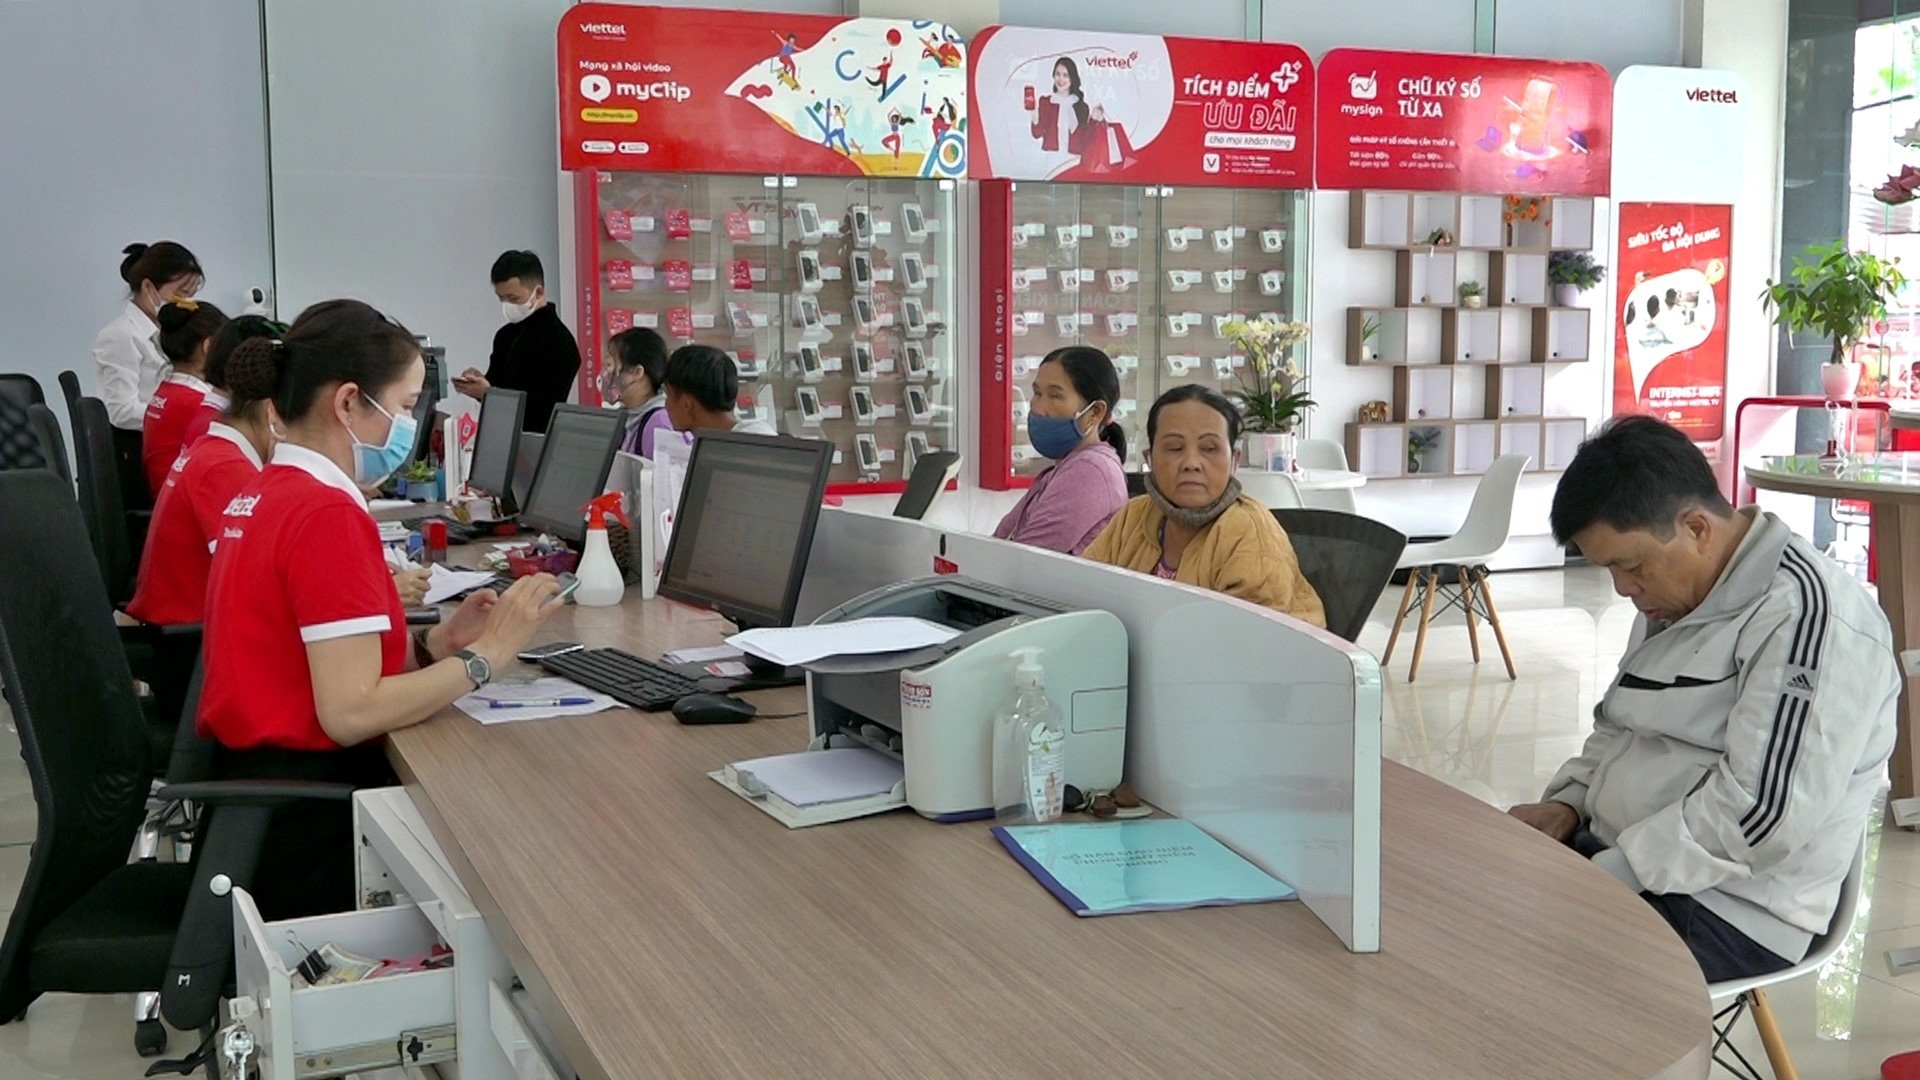 Người dân đến điểm giao dịch của Viettel Quảng Nam để làm thủ tục chuẩn hóa thông tin thuê bao di động. Ảnh: V.A